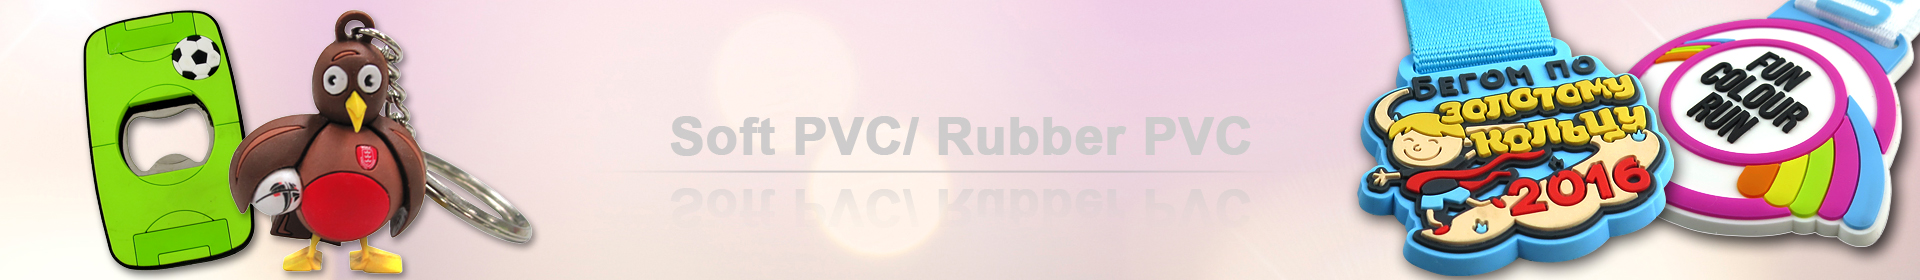 Les sous-verres souples et personnalisés en PVC souple so